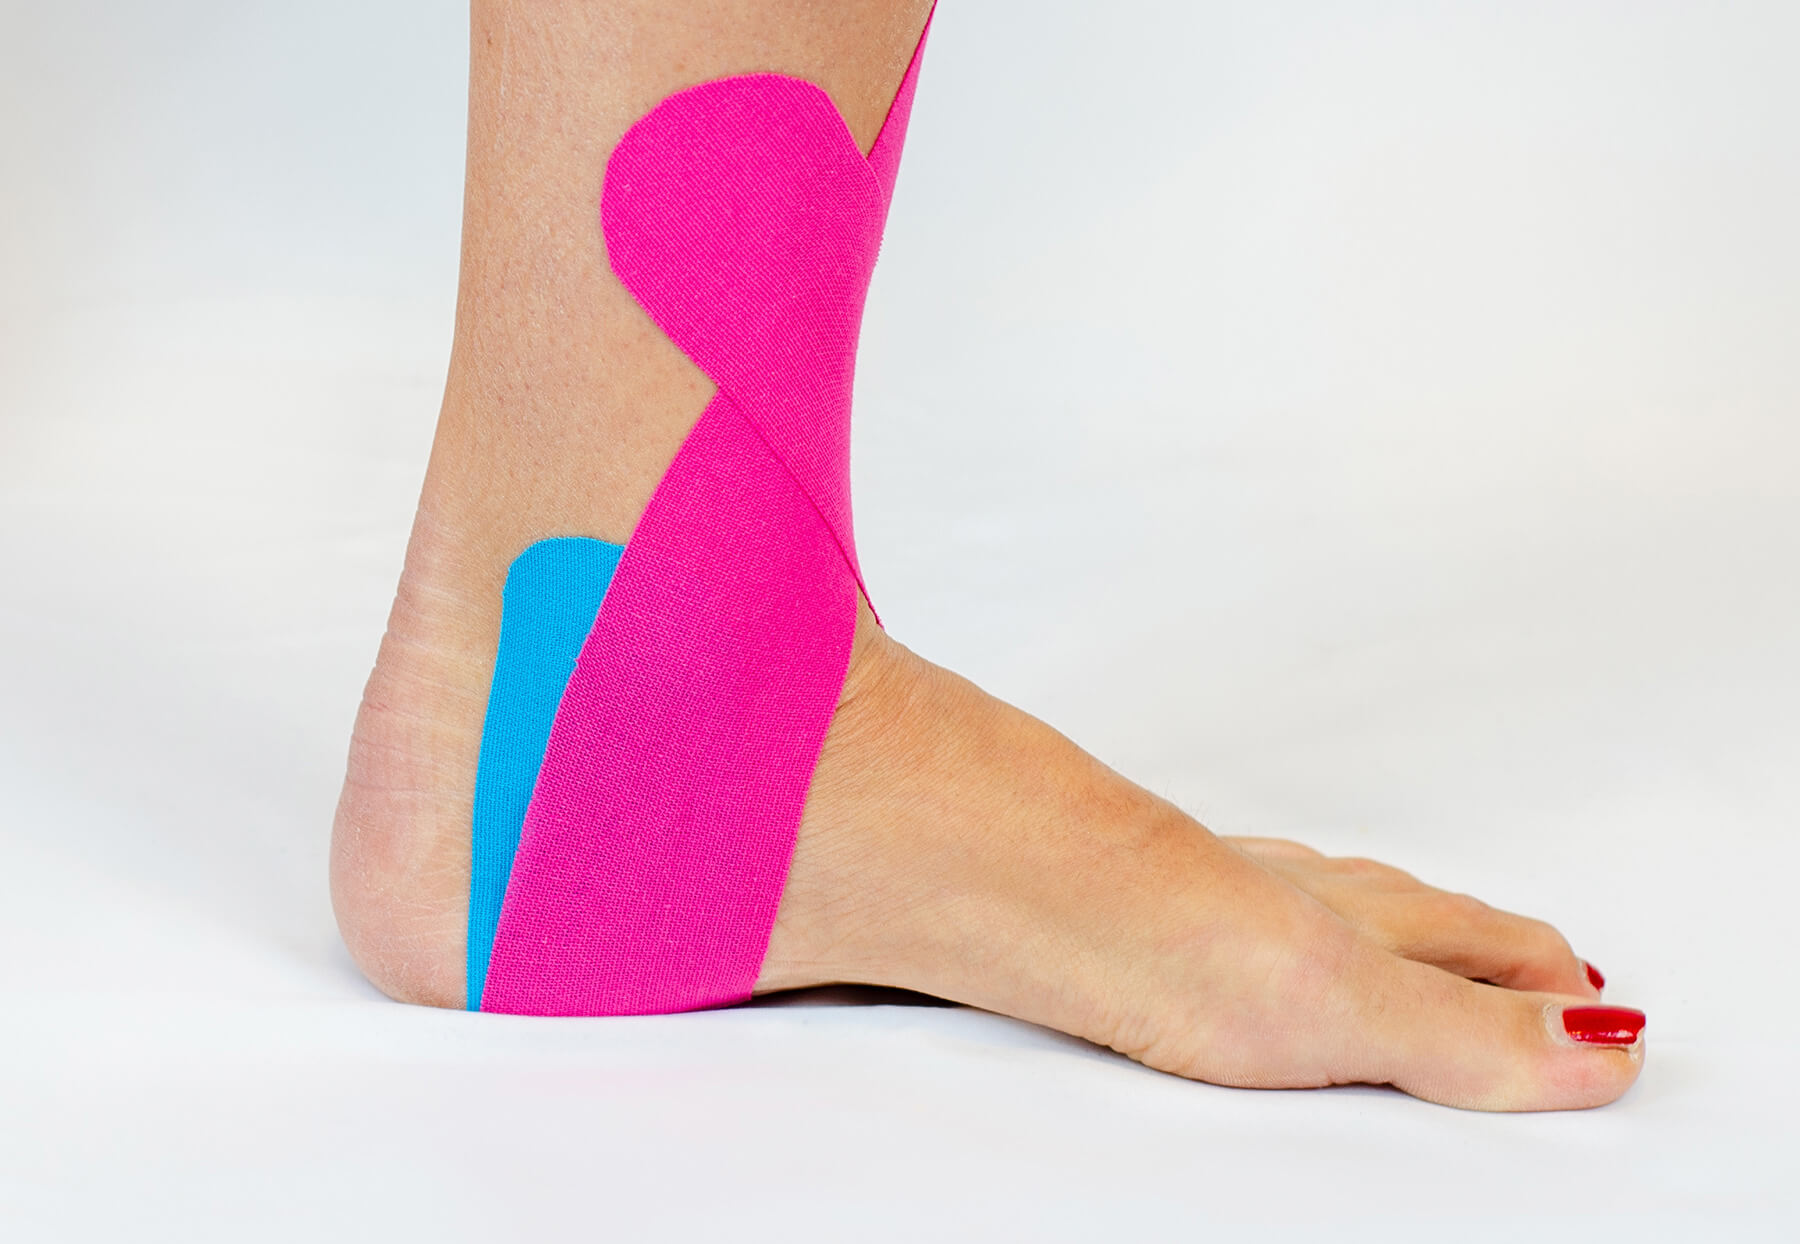 Behandlung-Kinesiologie-Fuß-Sprungelenk